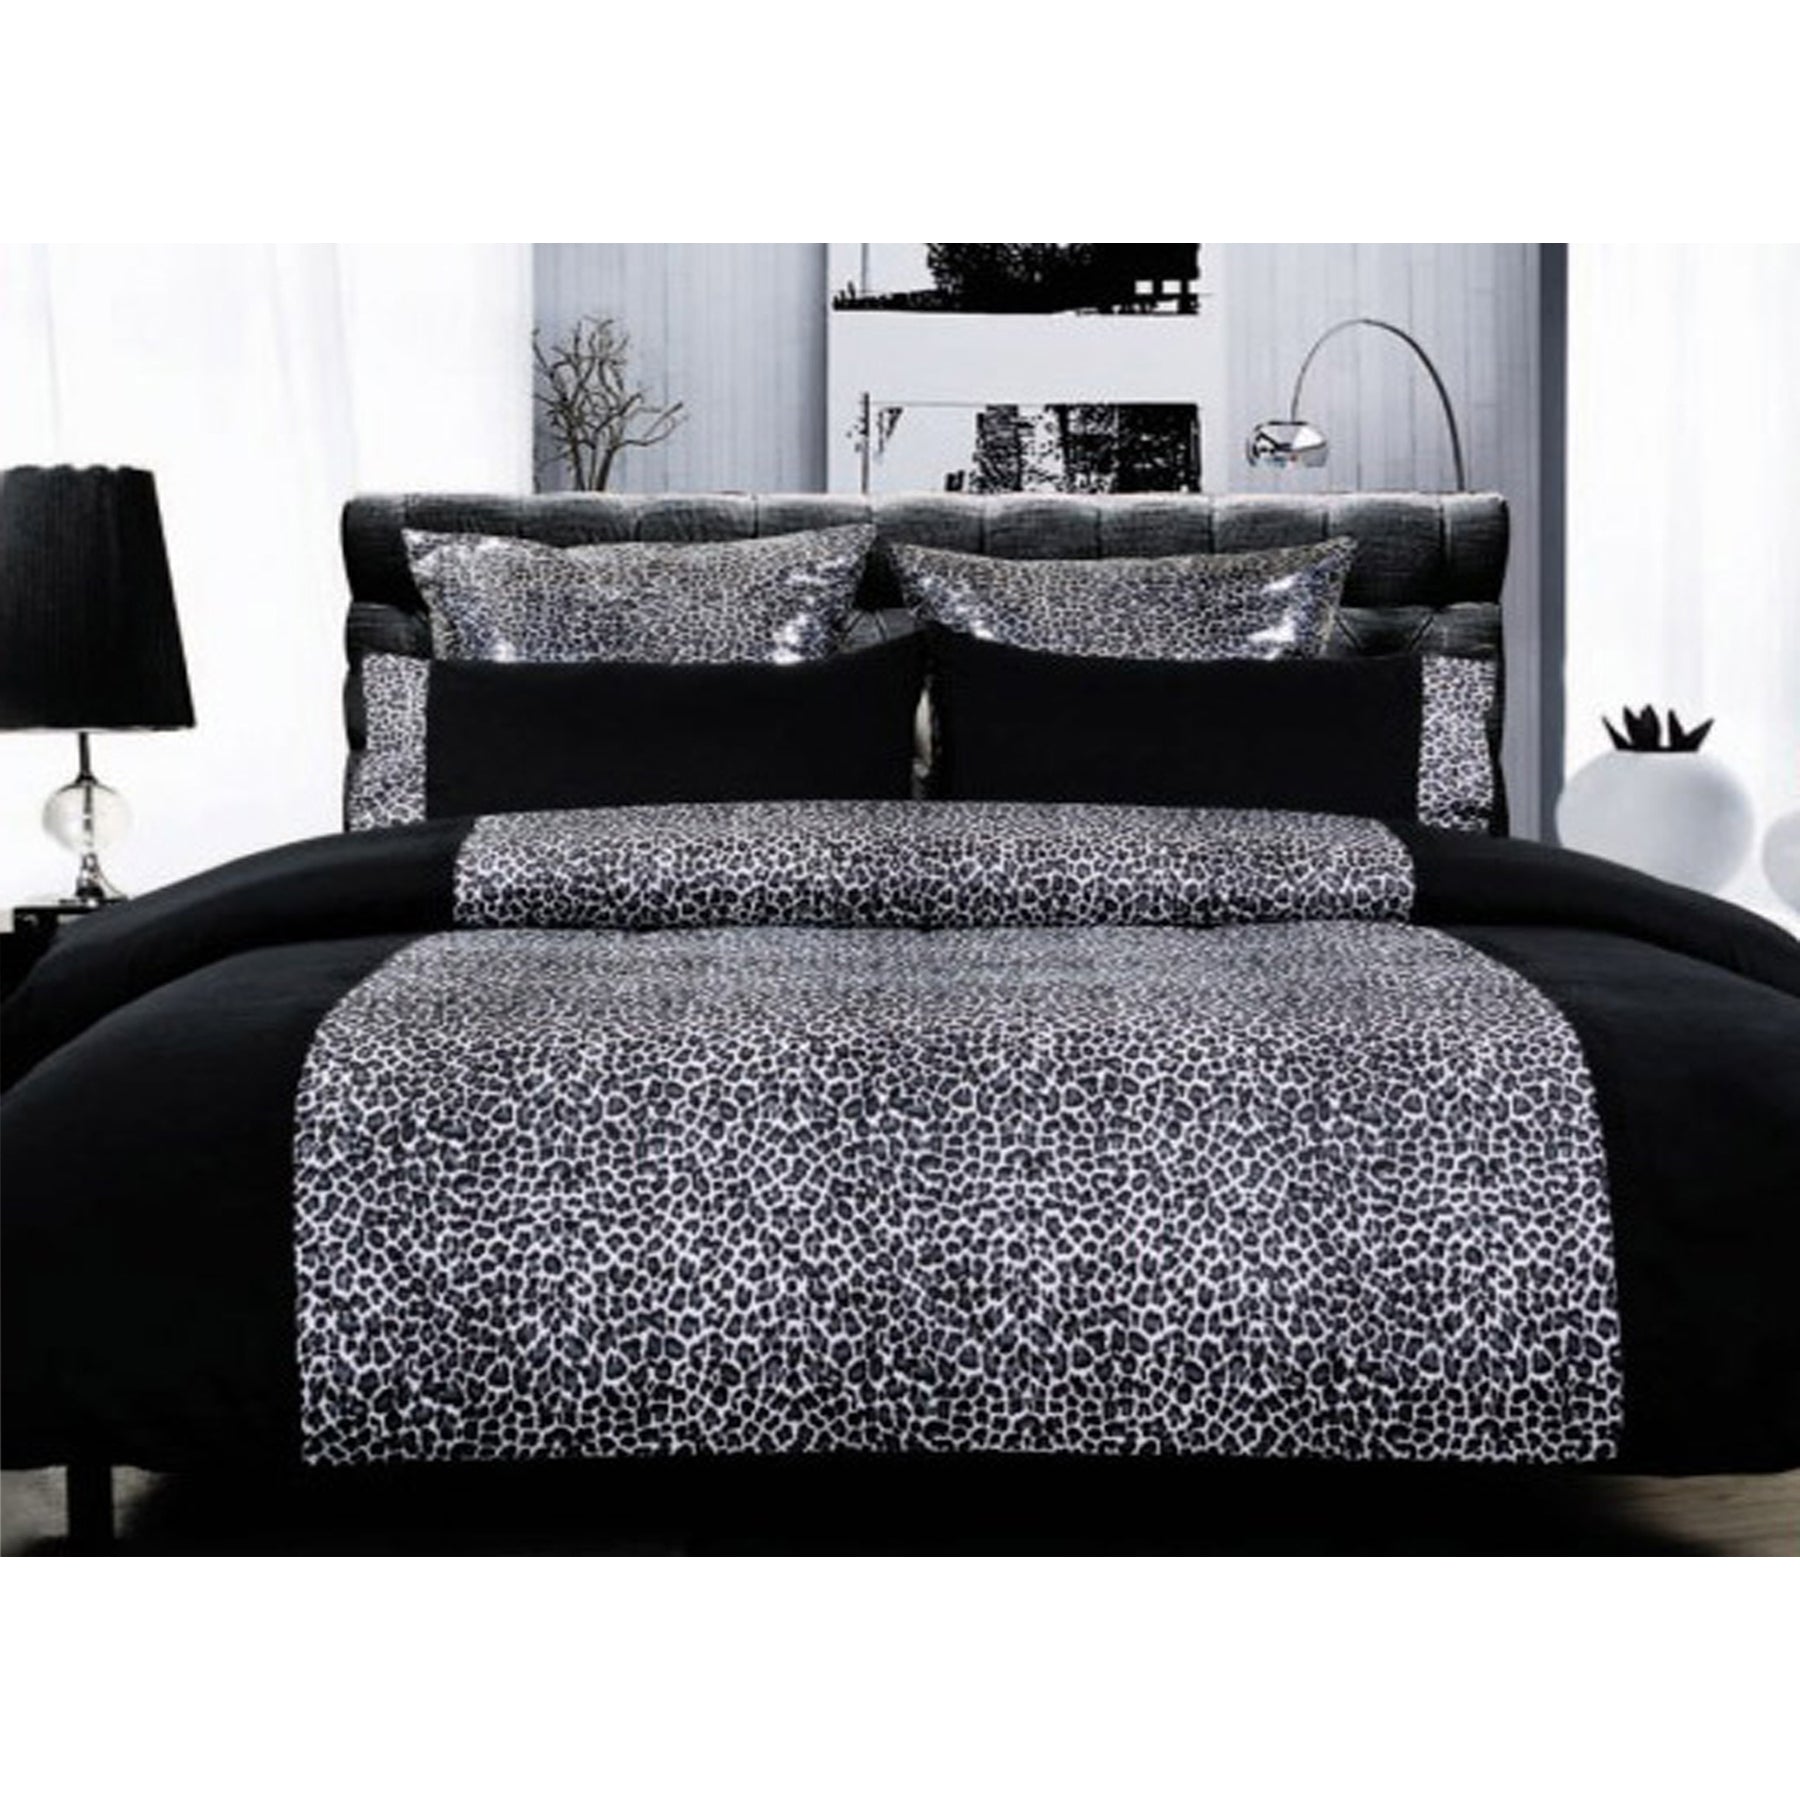 Leopard Quilt Cover Set Black Super King - Newstart Furniture